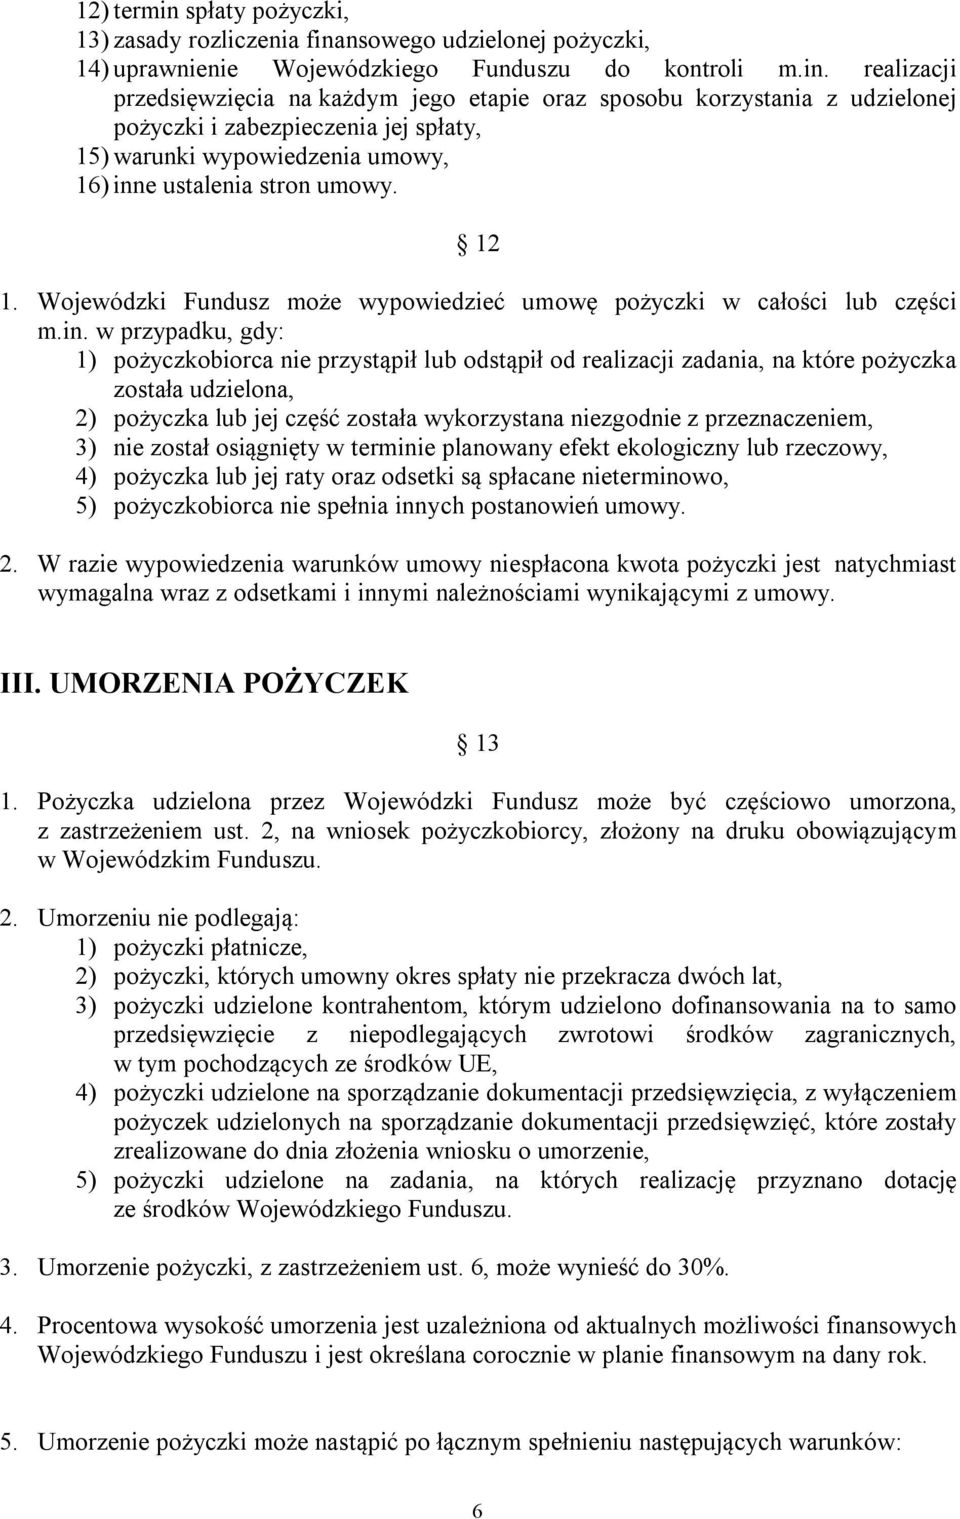 nsowego udzielonej pożyczki, 14) uprawnienie Wojewódzkiego Funduszu do kontroli m.in.